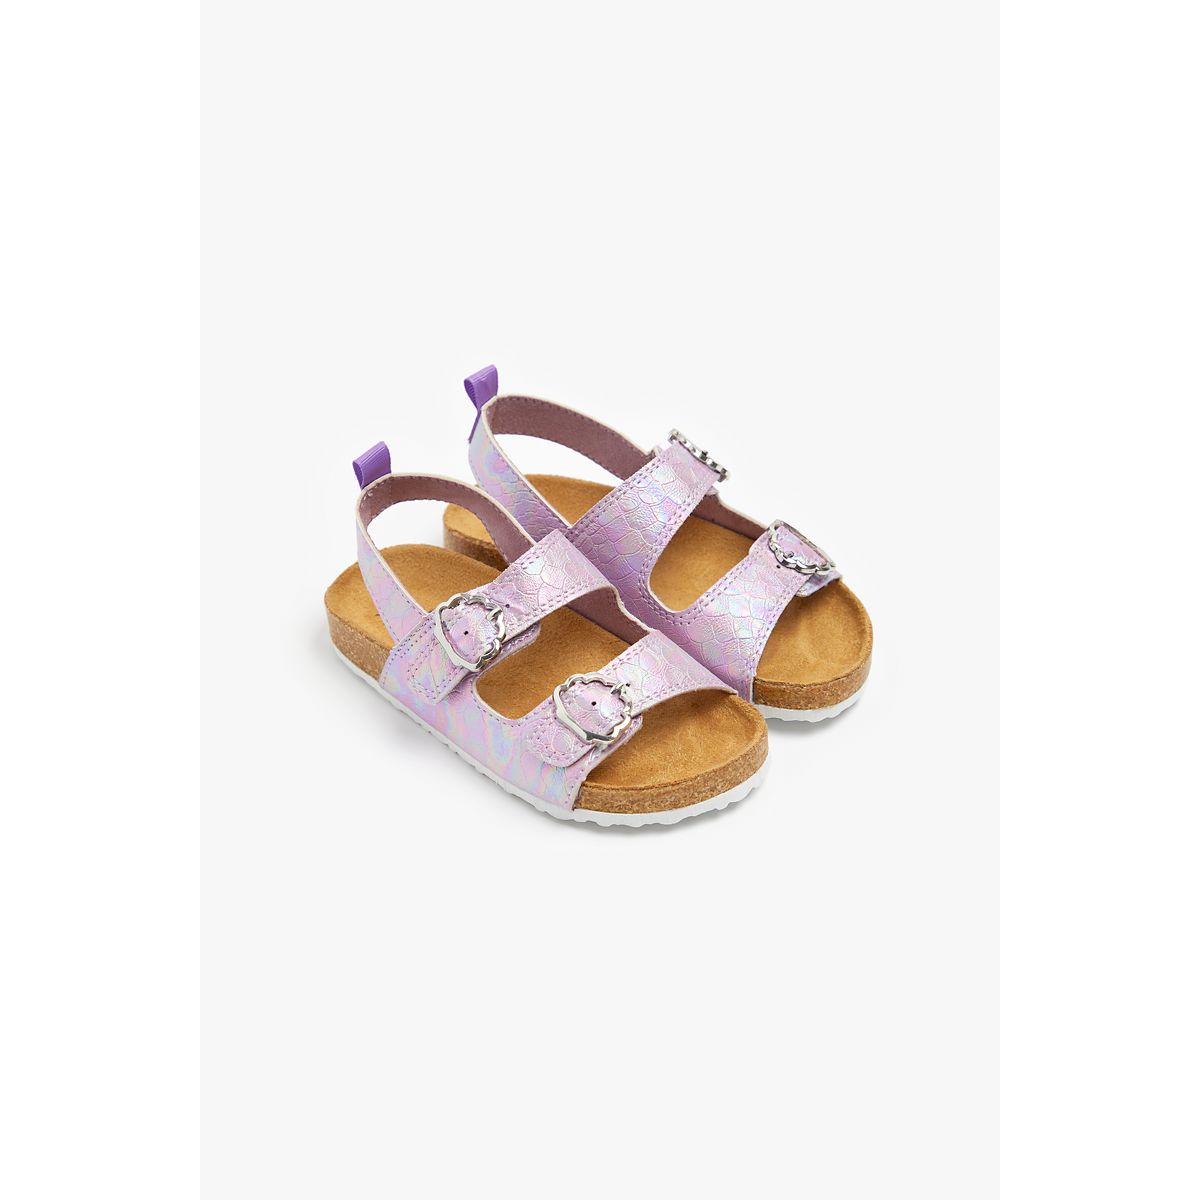 Buy Mermaid Shimmer Sandals online | Mothercare UAE